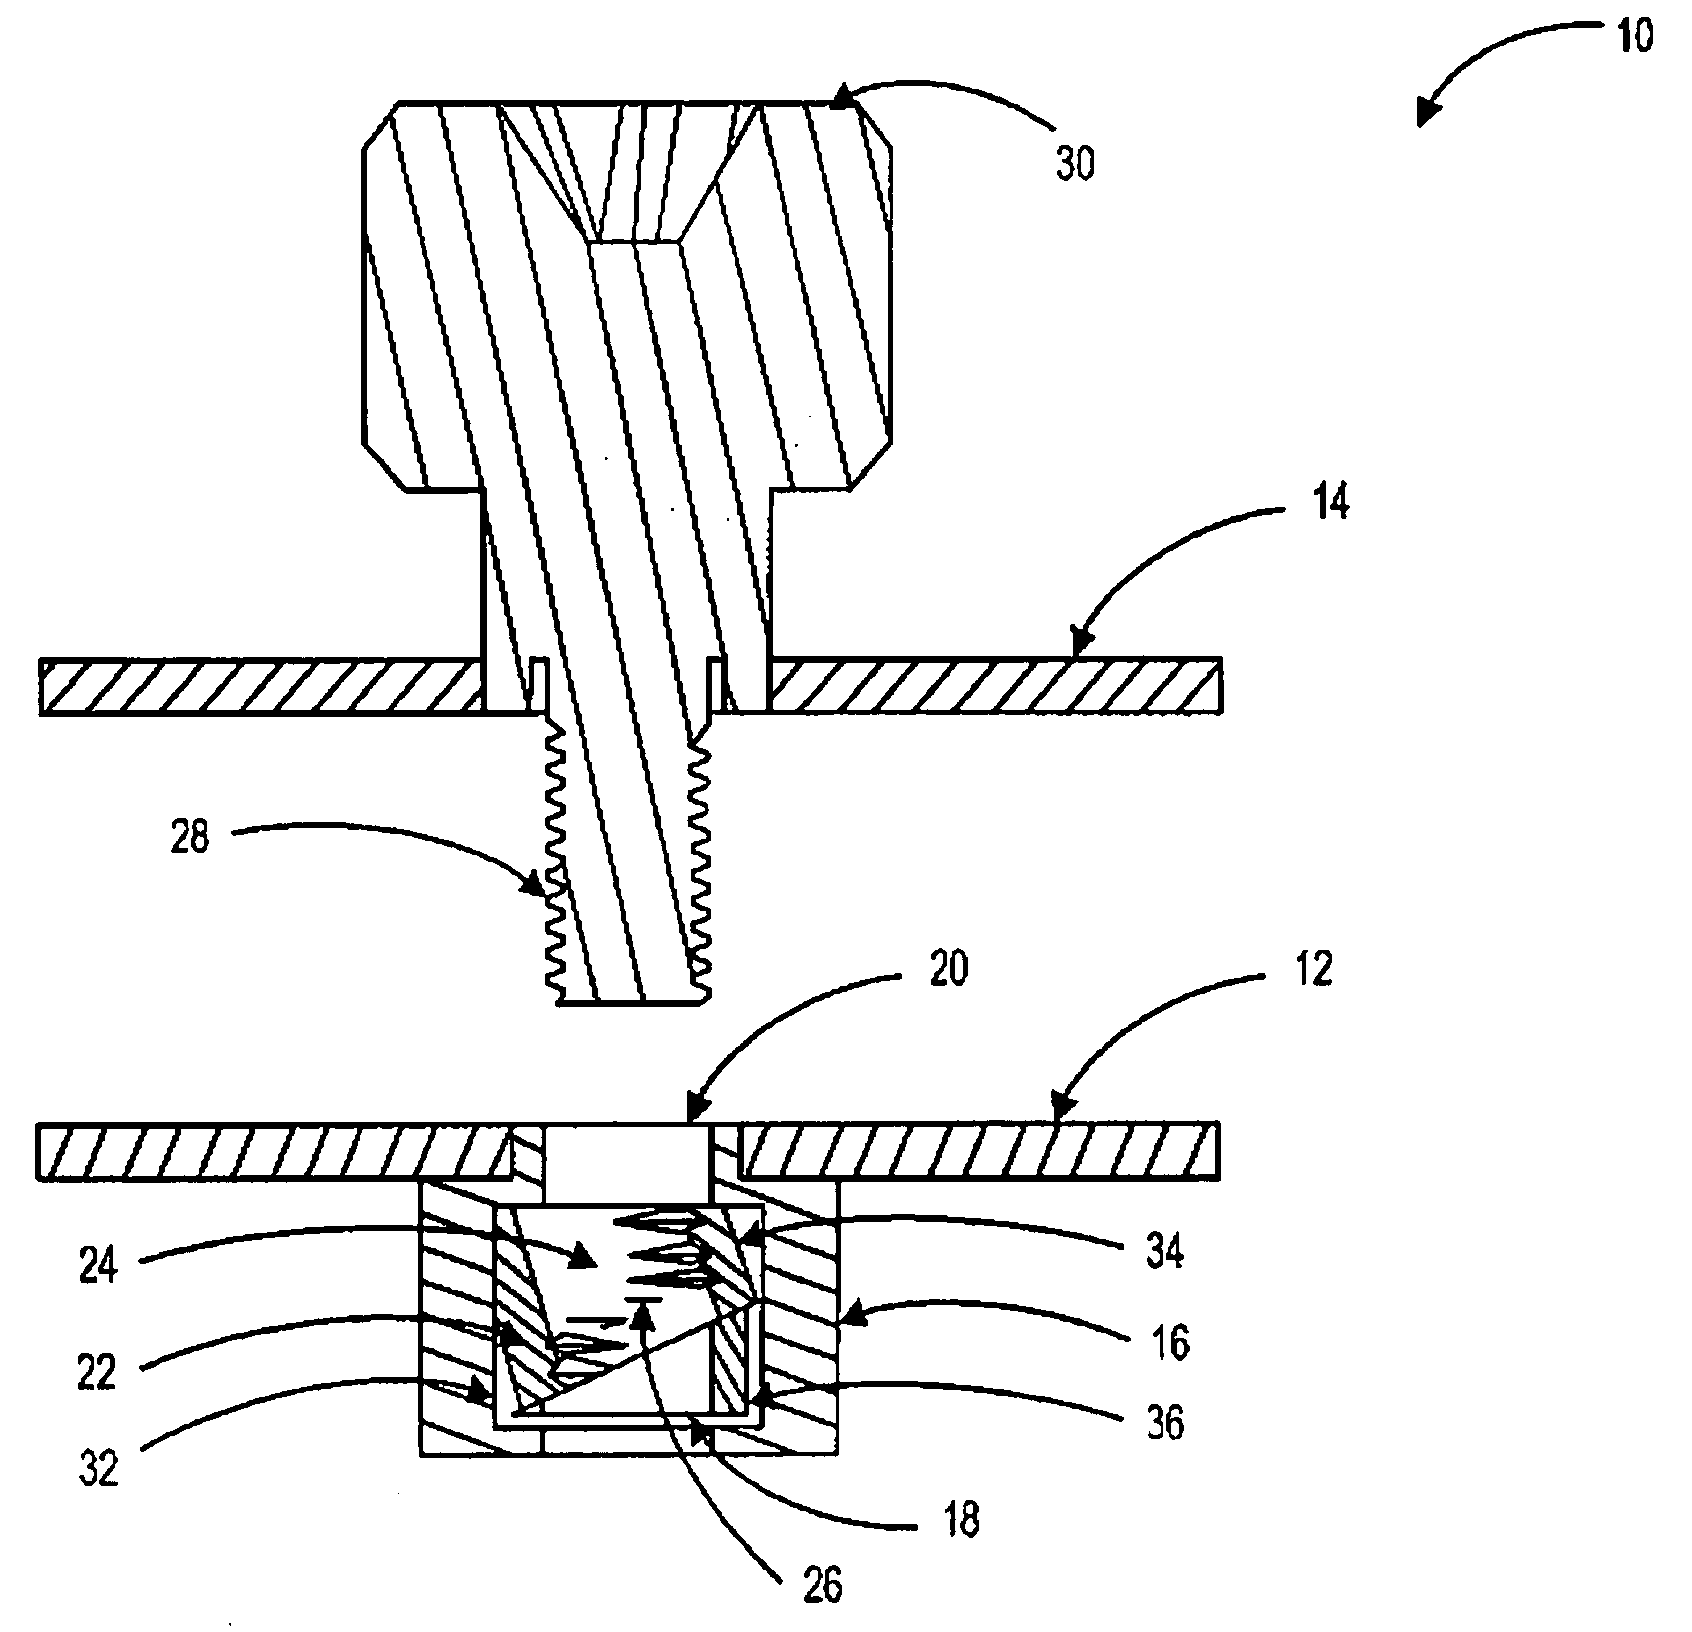 Rapid fastening screw apparatus and method